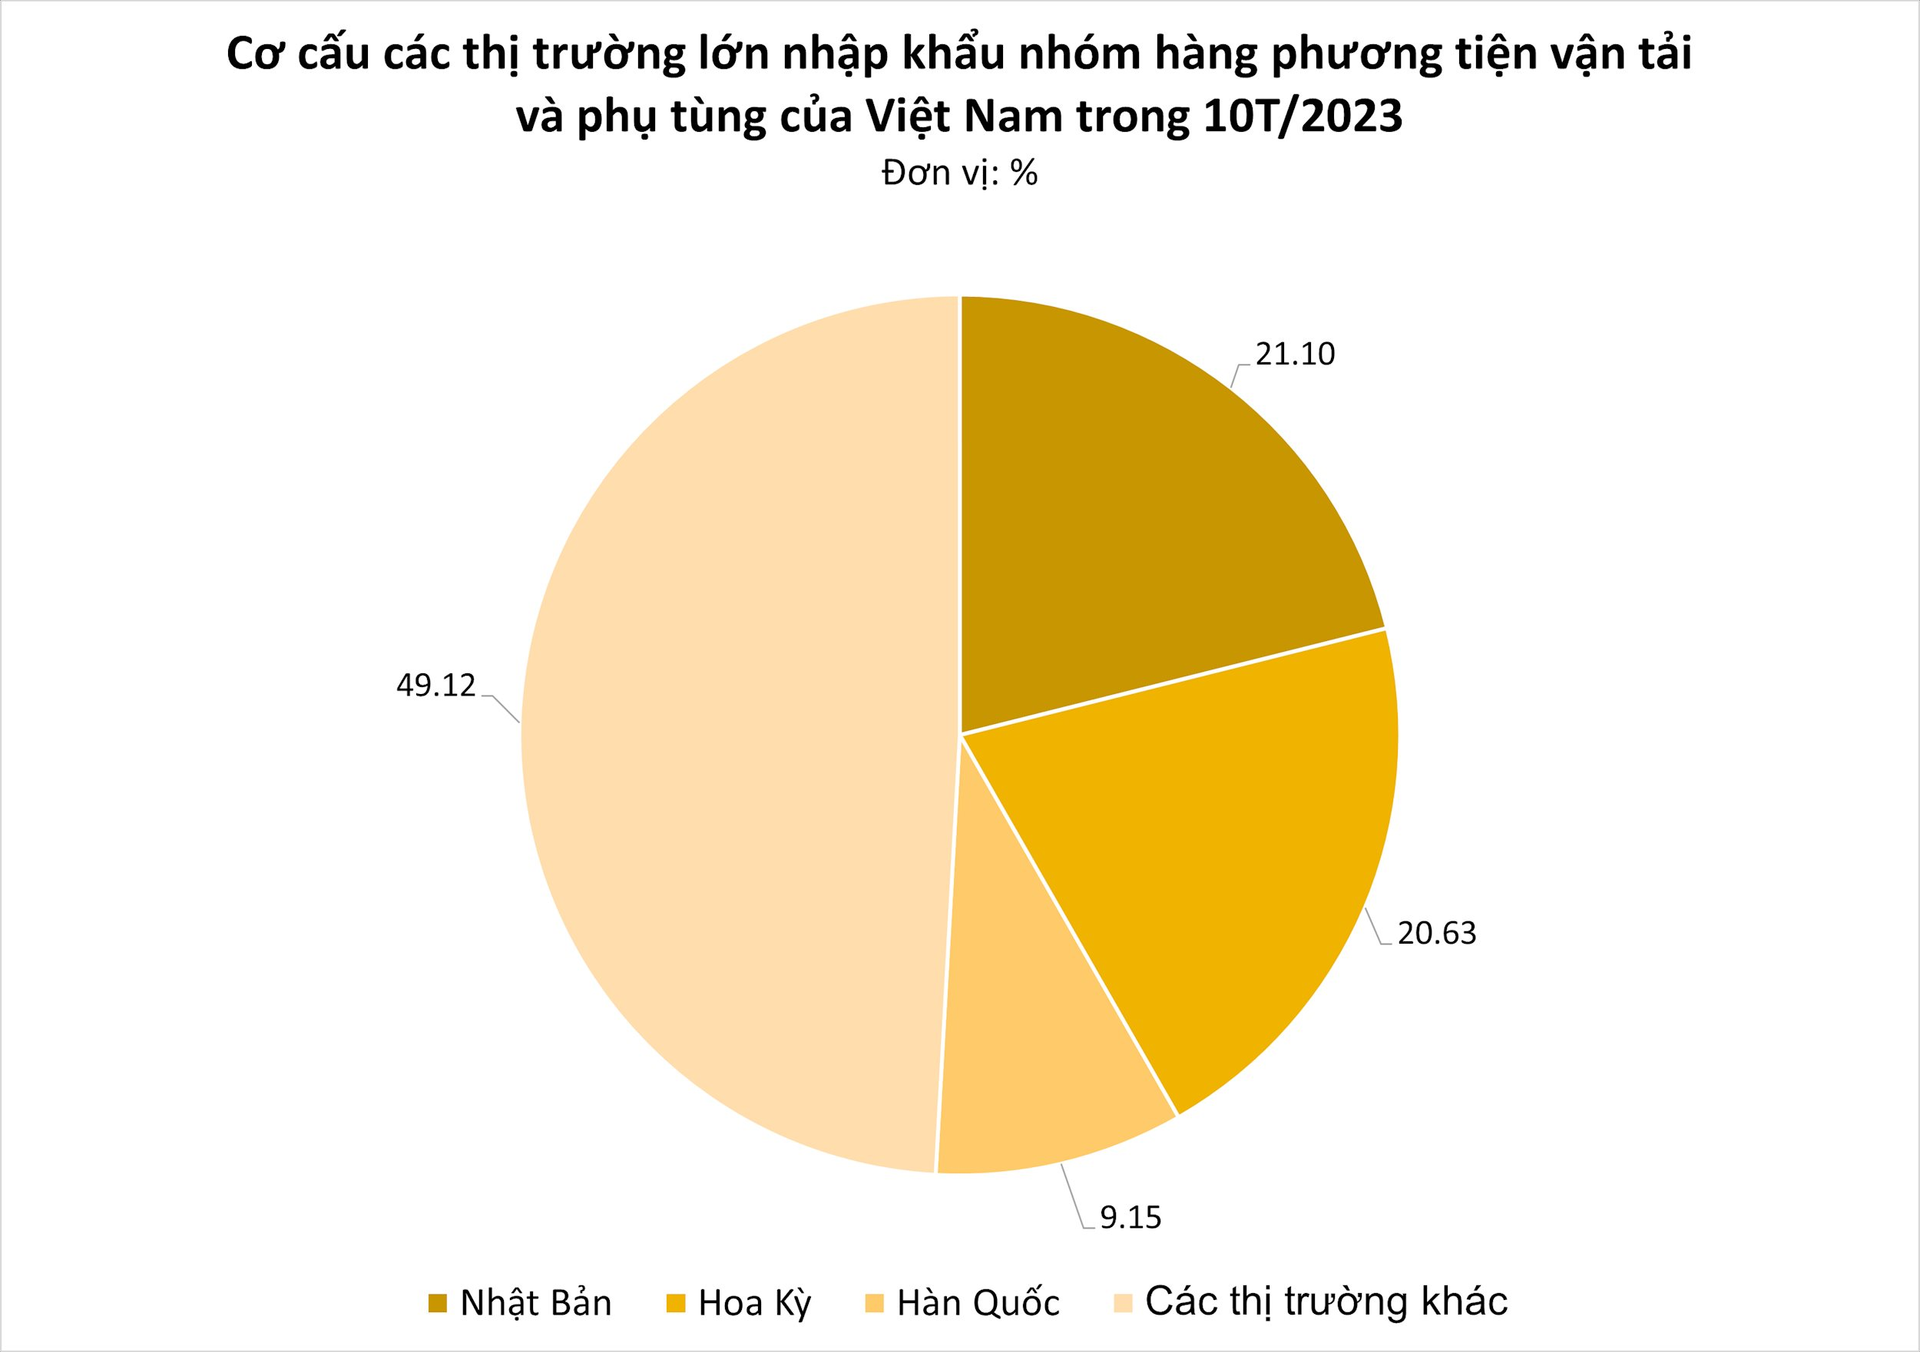 Vị thế ngày càng lên, mặt hàng này của Việt Nam được nhiều ông lớn sản xuất mạnh tay gom hàng - Xuất khẩu tăng nóng gần 900% chỉ trong tháng 10 - Ảnh 1.